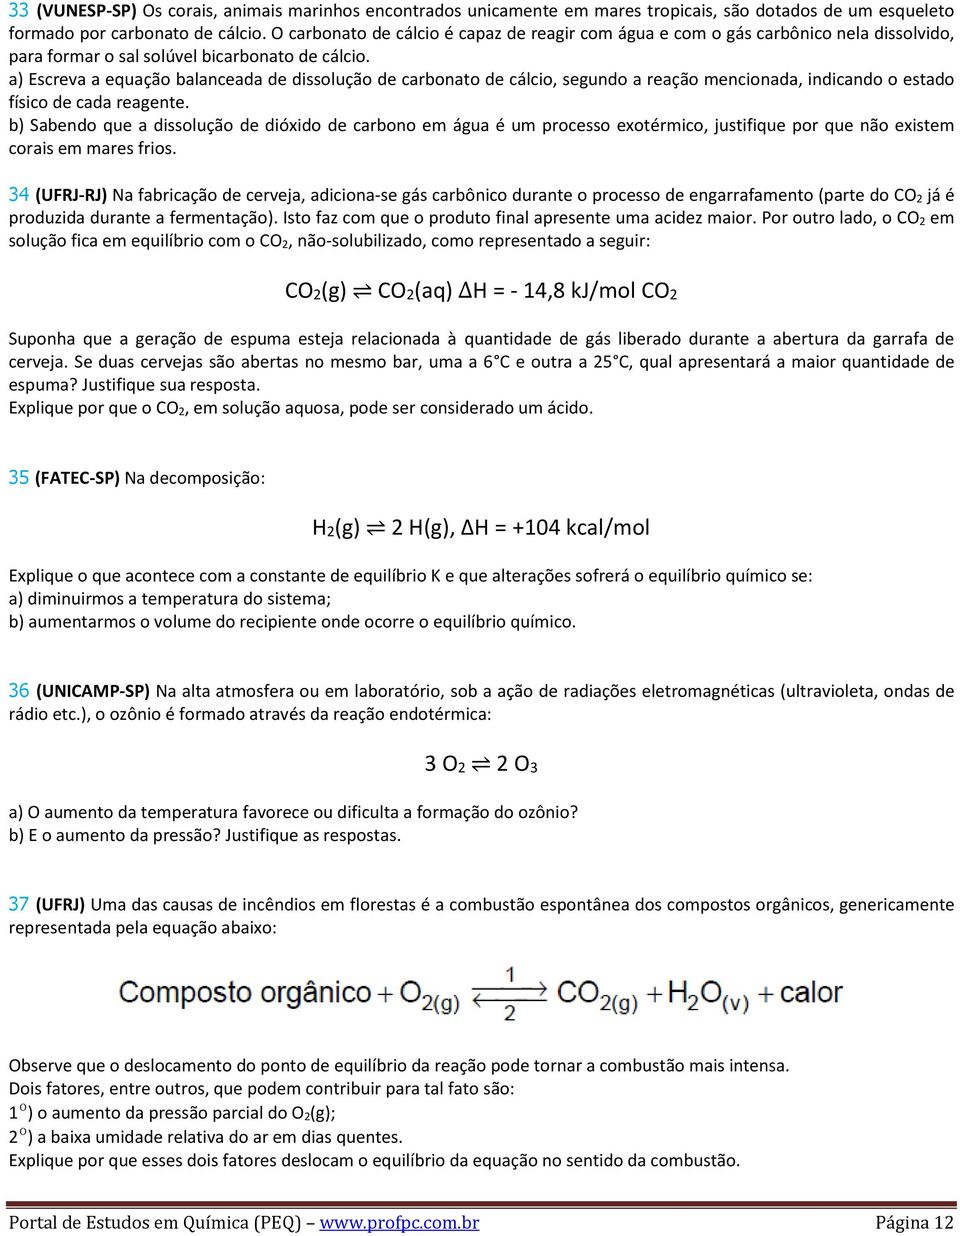 a) Escreva a equação balanceada de dissolução de carbonato de cálcio, segundo a reação mencionada, indicando o estado físico de cada reagente.